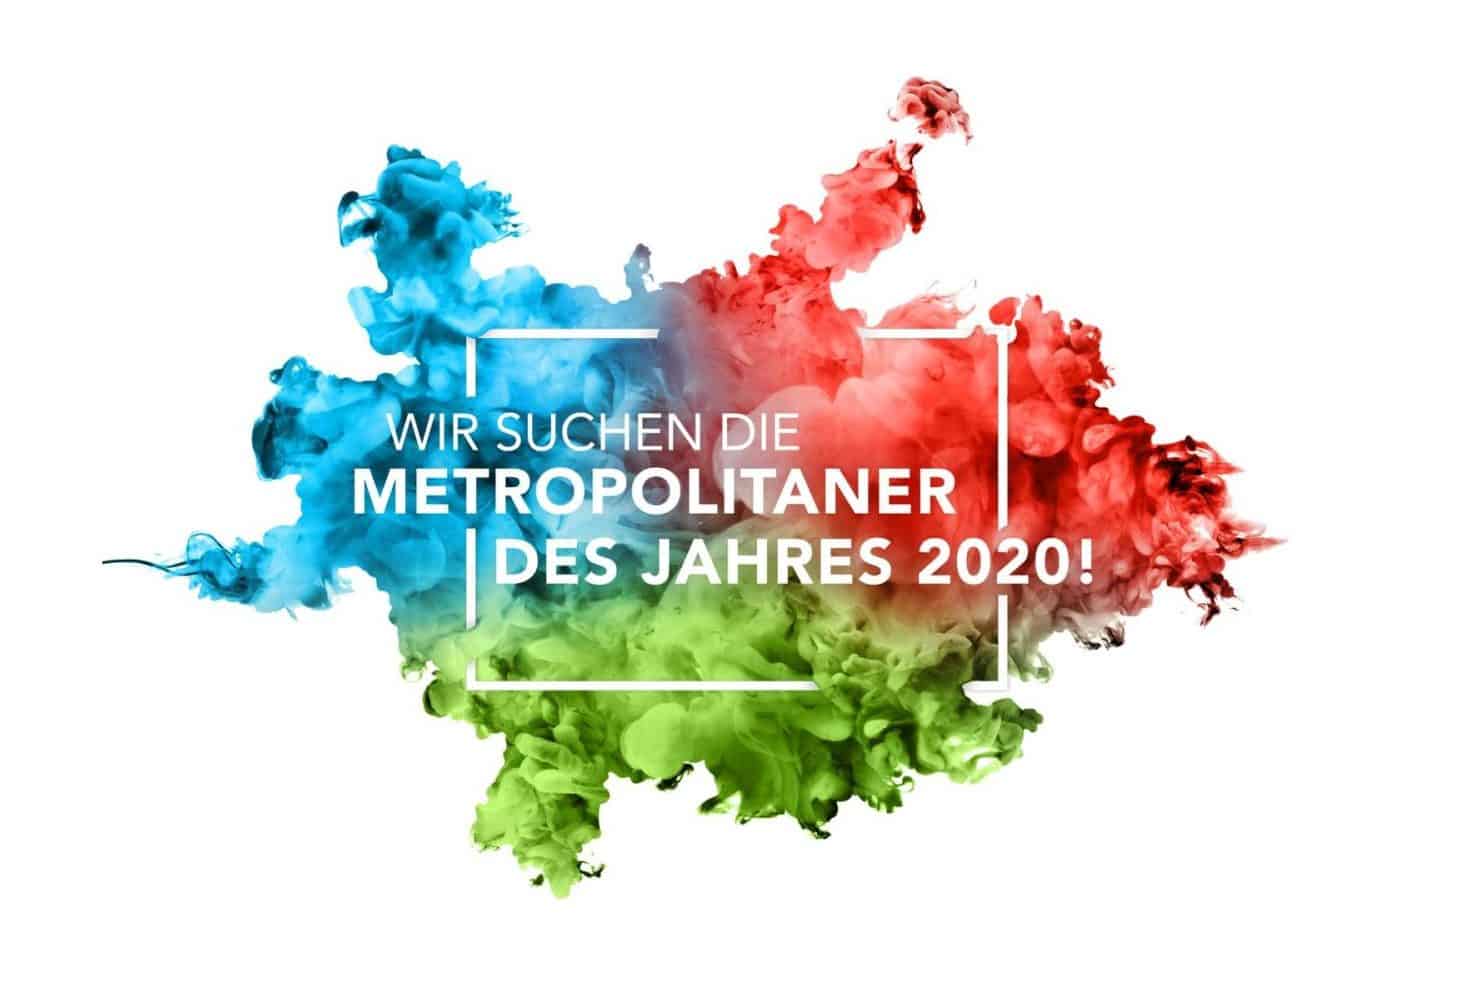 Metropolitaner 2020 Logo 2160x1440